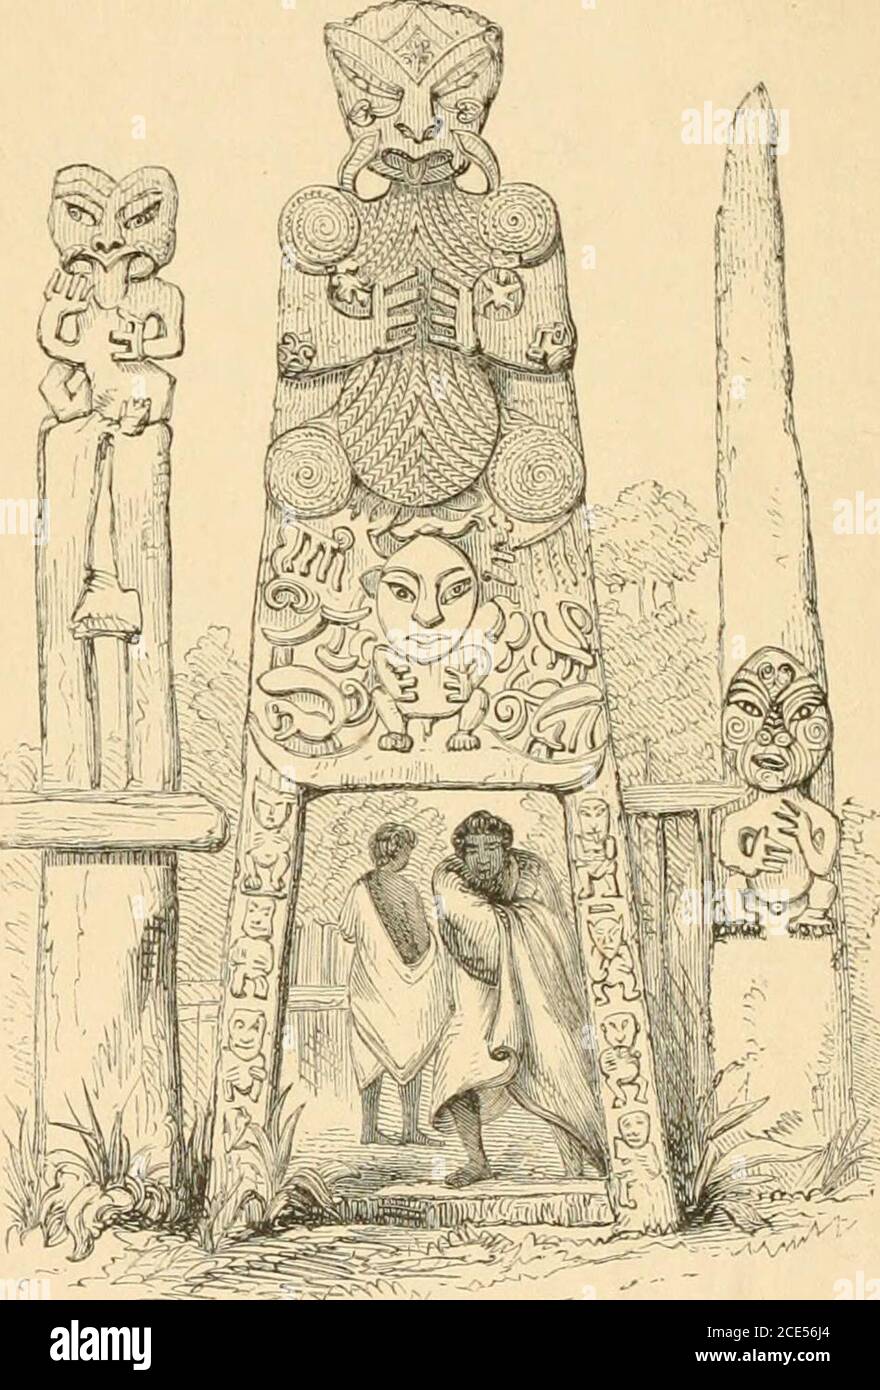 . Polynesische Mythologie und alte traditionelle Geschichte der neuseeländischen Rasse, wie sie von ihren Priestern und Häuptlingen eingerichtet wurden. Es ist bis dahin nicht weit heraufgekommen. Die Leute im Kanu, die Tamure verfolgten, kamen nach dem Hören dieses wieder in ihr eigenes Dorf zurück, und Kiki starb an den Beschwörungen von Tamure. Einige Kikis-Nachkommen sind noch immer livino-- einer von ihnen, genannt Mokahi, starb vor kurzem in Tau-ranga-Ruru, aber Te Maioha lebt immer noch auf theriver Waipa. Ja, einige der Nachkommen von Kiki, deren Schatten verdorrte Bäume, leben noch. 278 POLYNESISCHE MYTHOLOGIE. Er war in der Tat ein Stockfoto